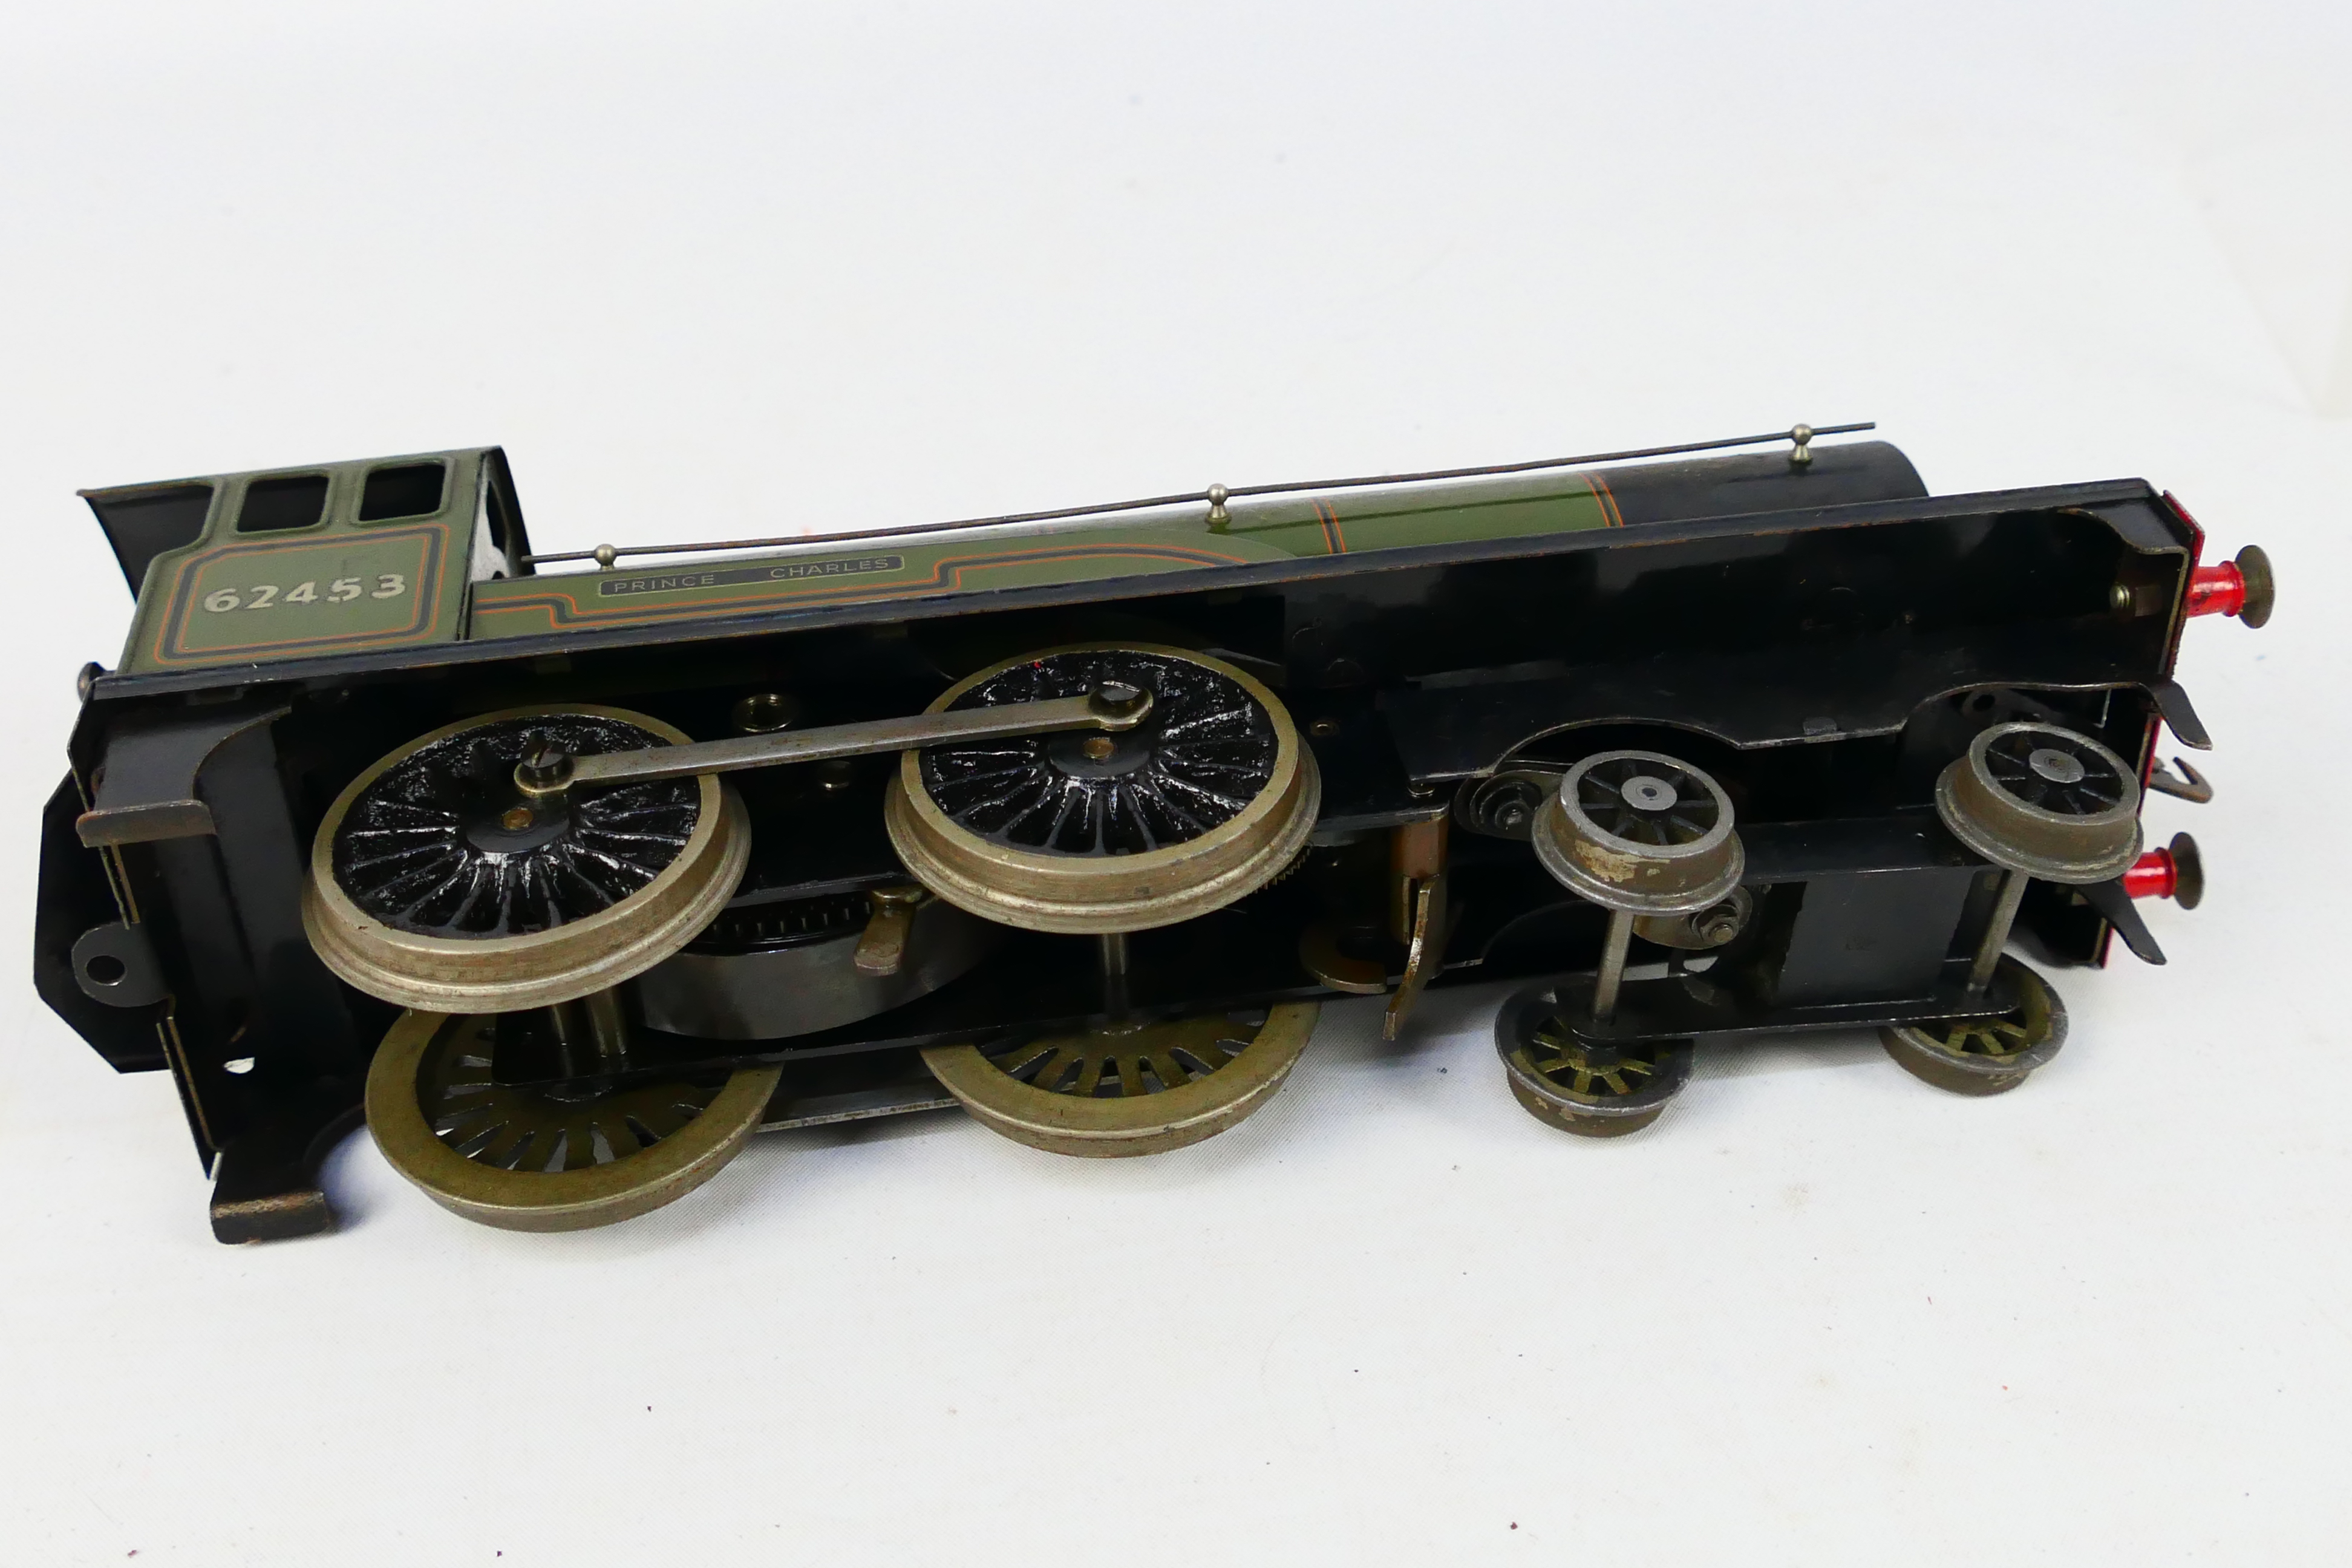 Bassett Lowke - Model Railways - An unboxed clockwork O gauge Bassett Lowke 4-4-0 62453 'Prince - Image 7 of 9